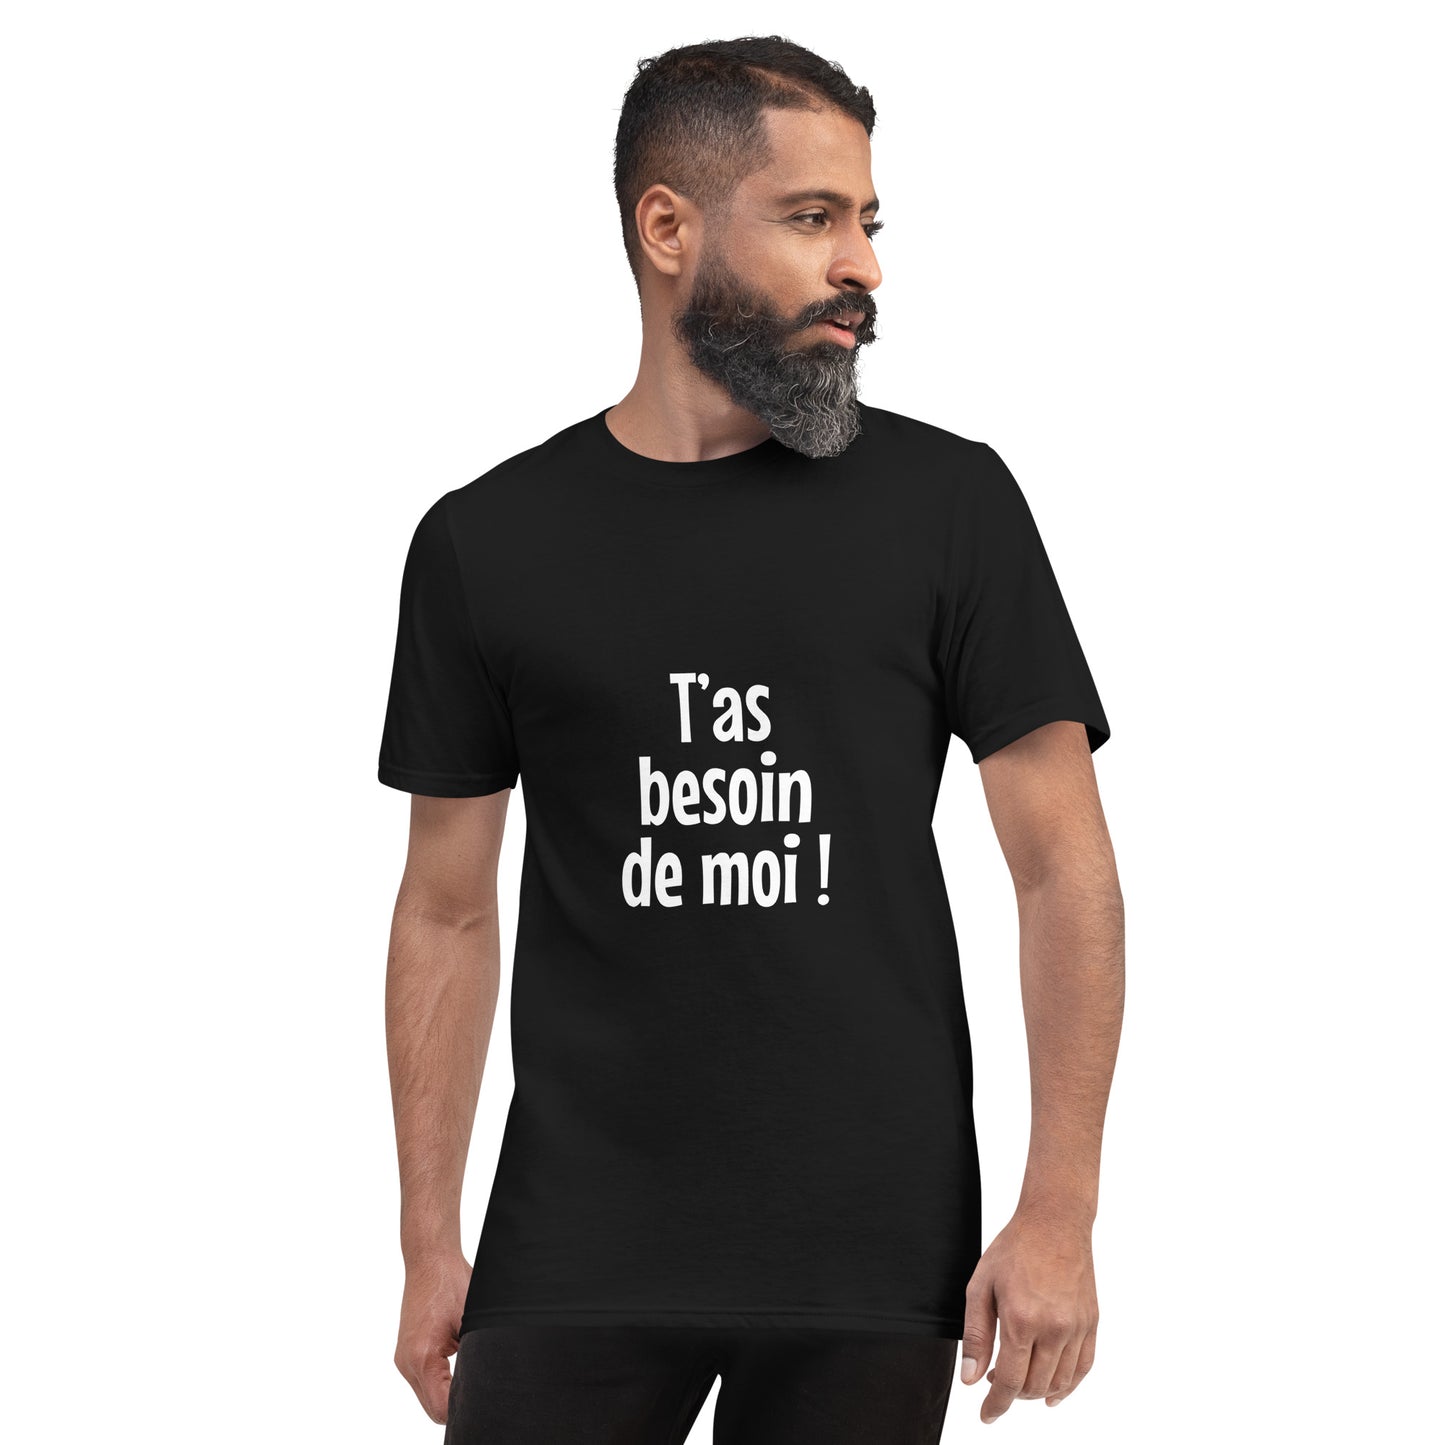 T'as besoin de moi - Men's T-Shirt